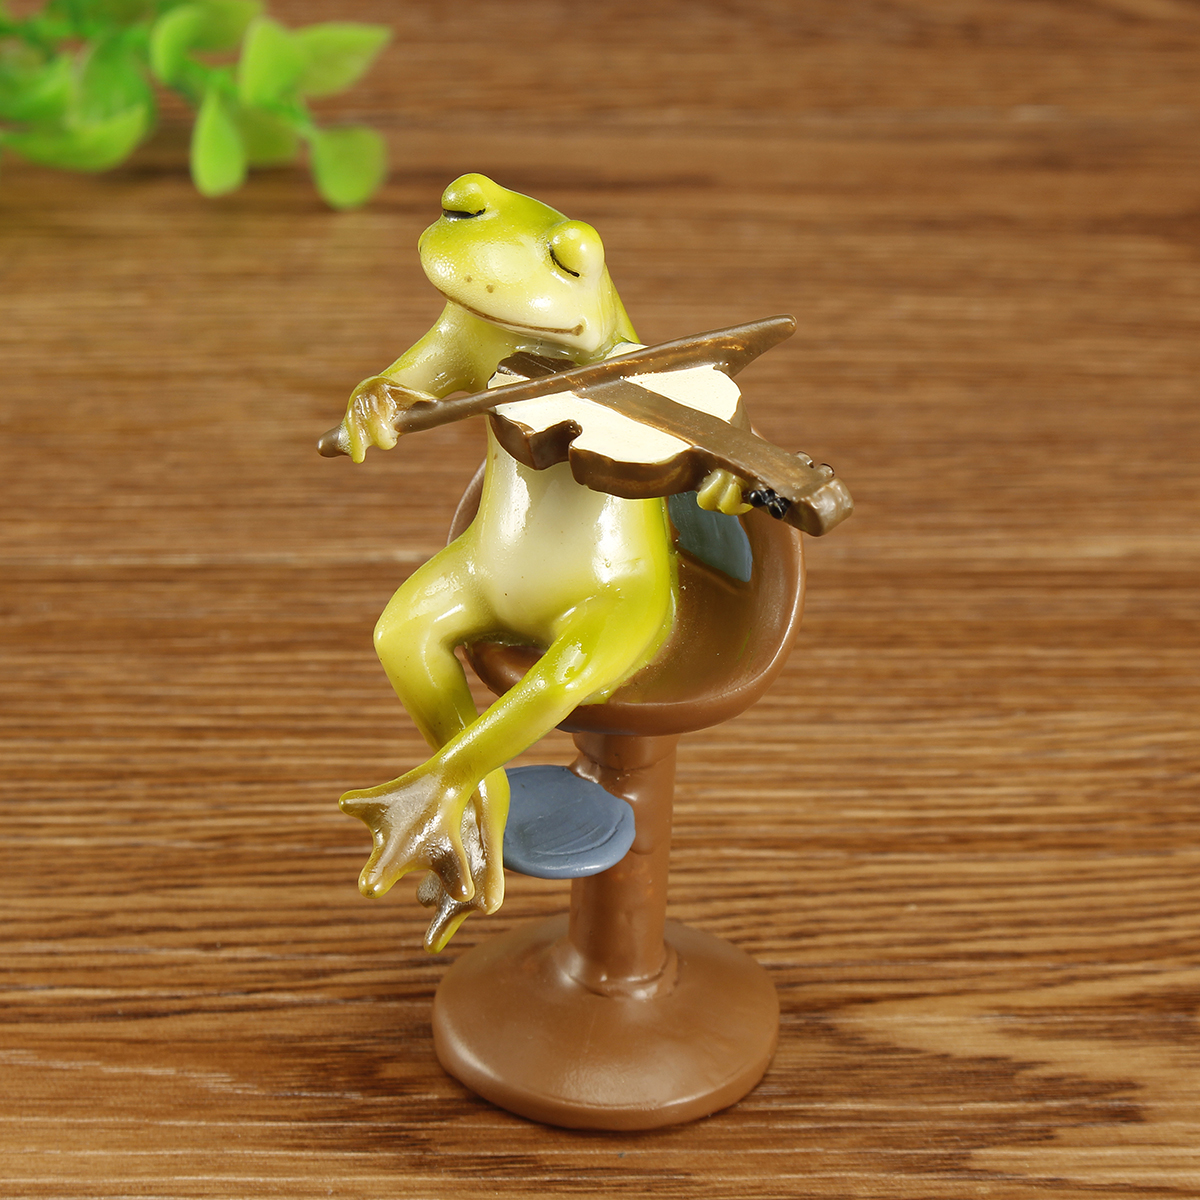 Cute-Frog-Statue-Figurine-Home-Office-Desk-Ornament-Garden-Bonsai-Decor-Gift-1704537-2